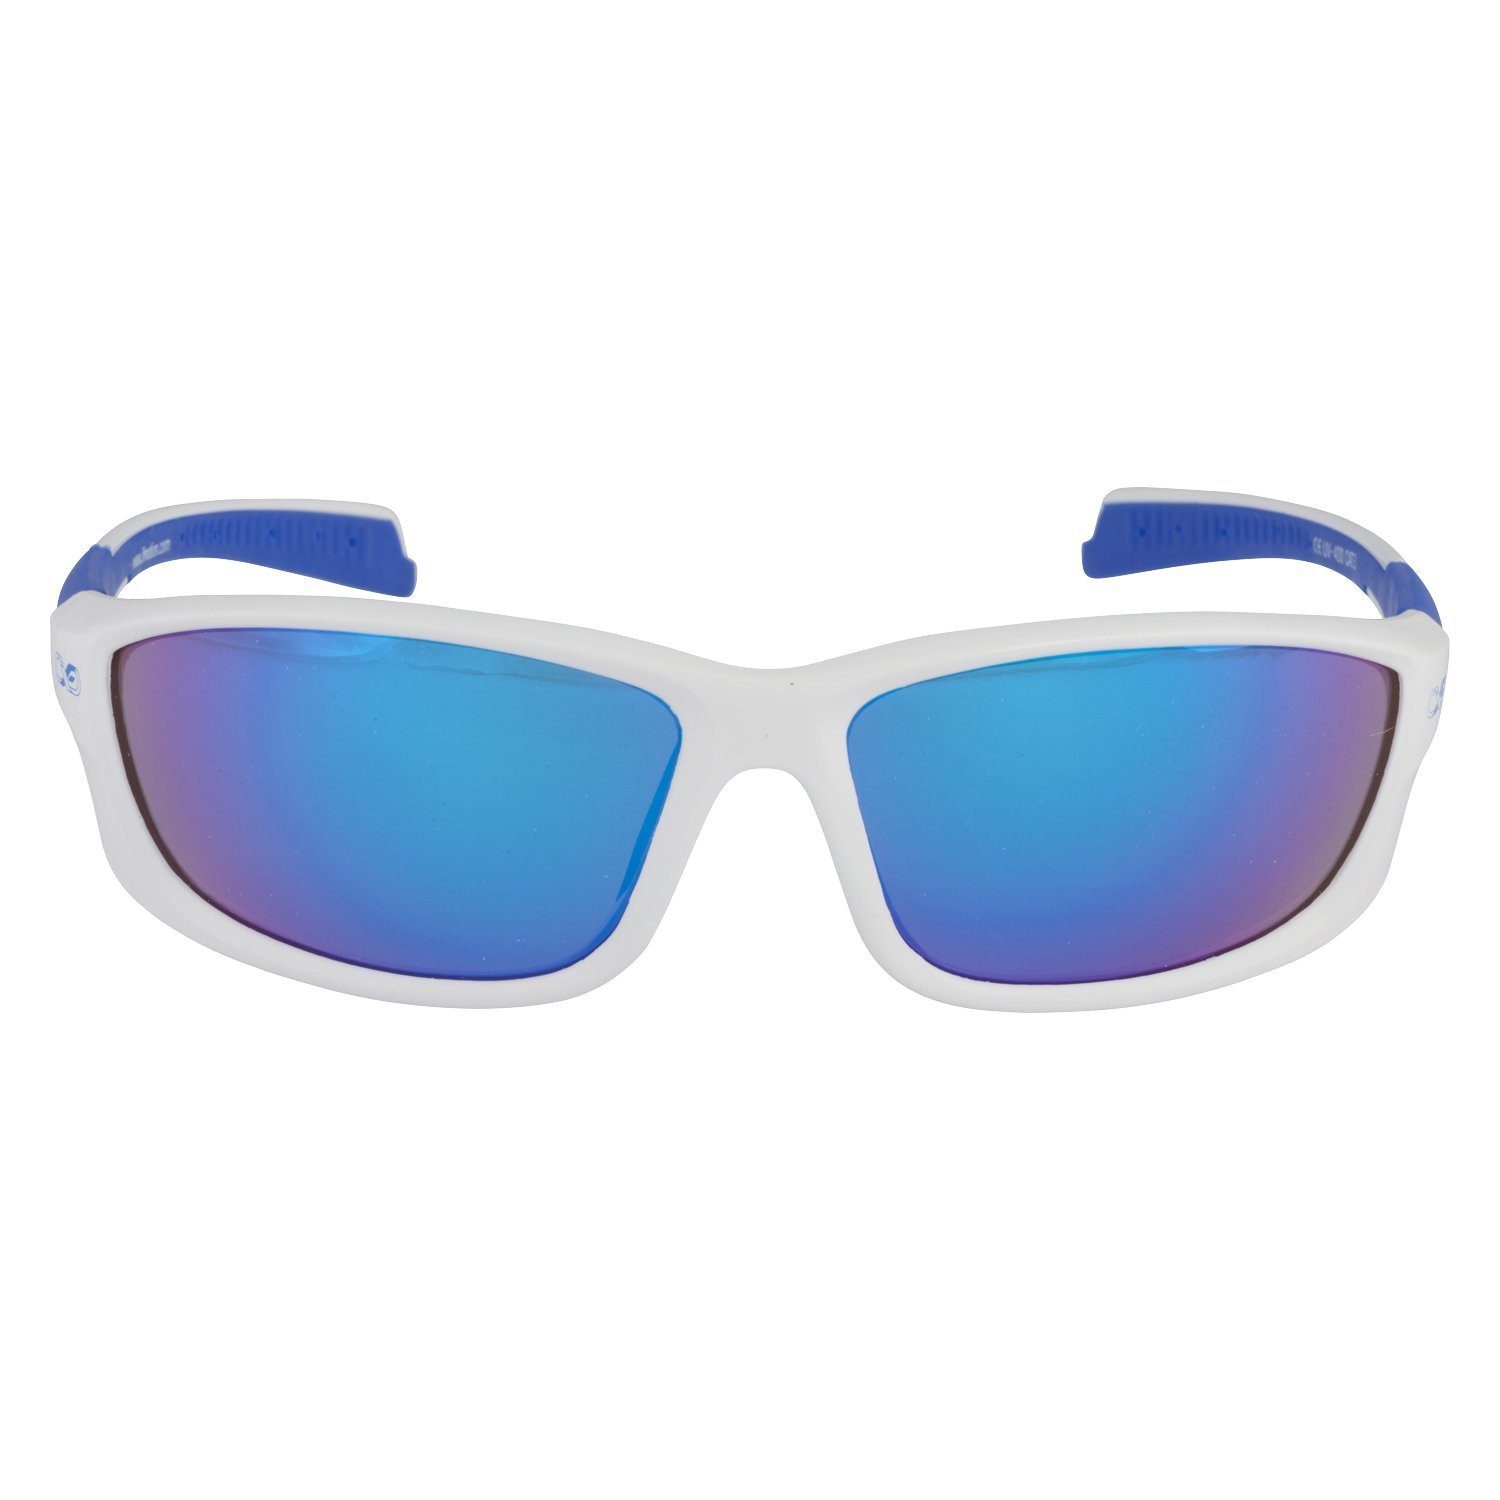 Viwanda Farben Reinigungstuch) Sportbrille (Mit 3 Infinite Sonnenbrille Aufbewahrungsbeutel / Eins in